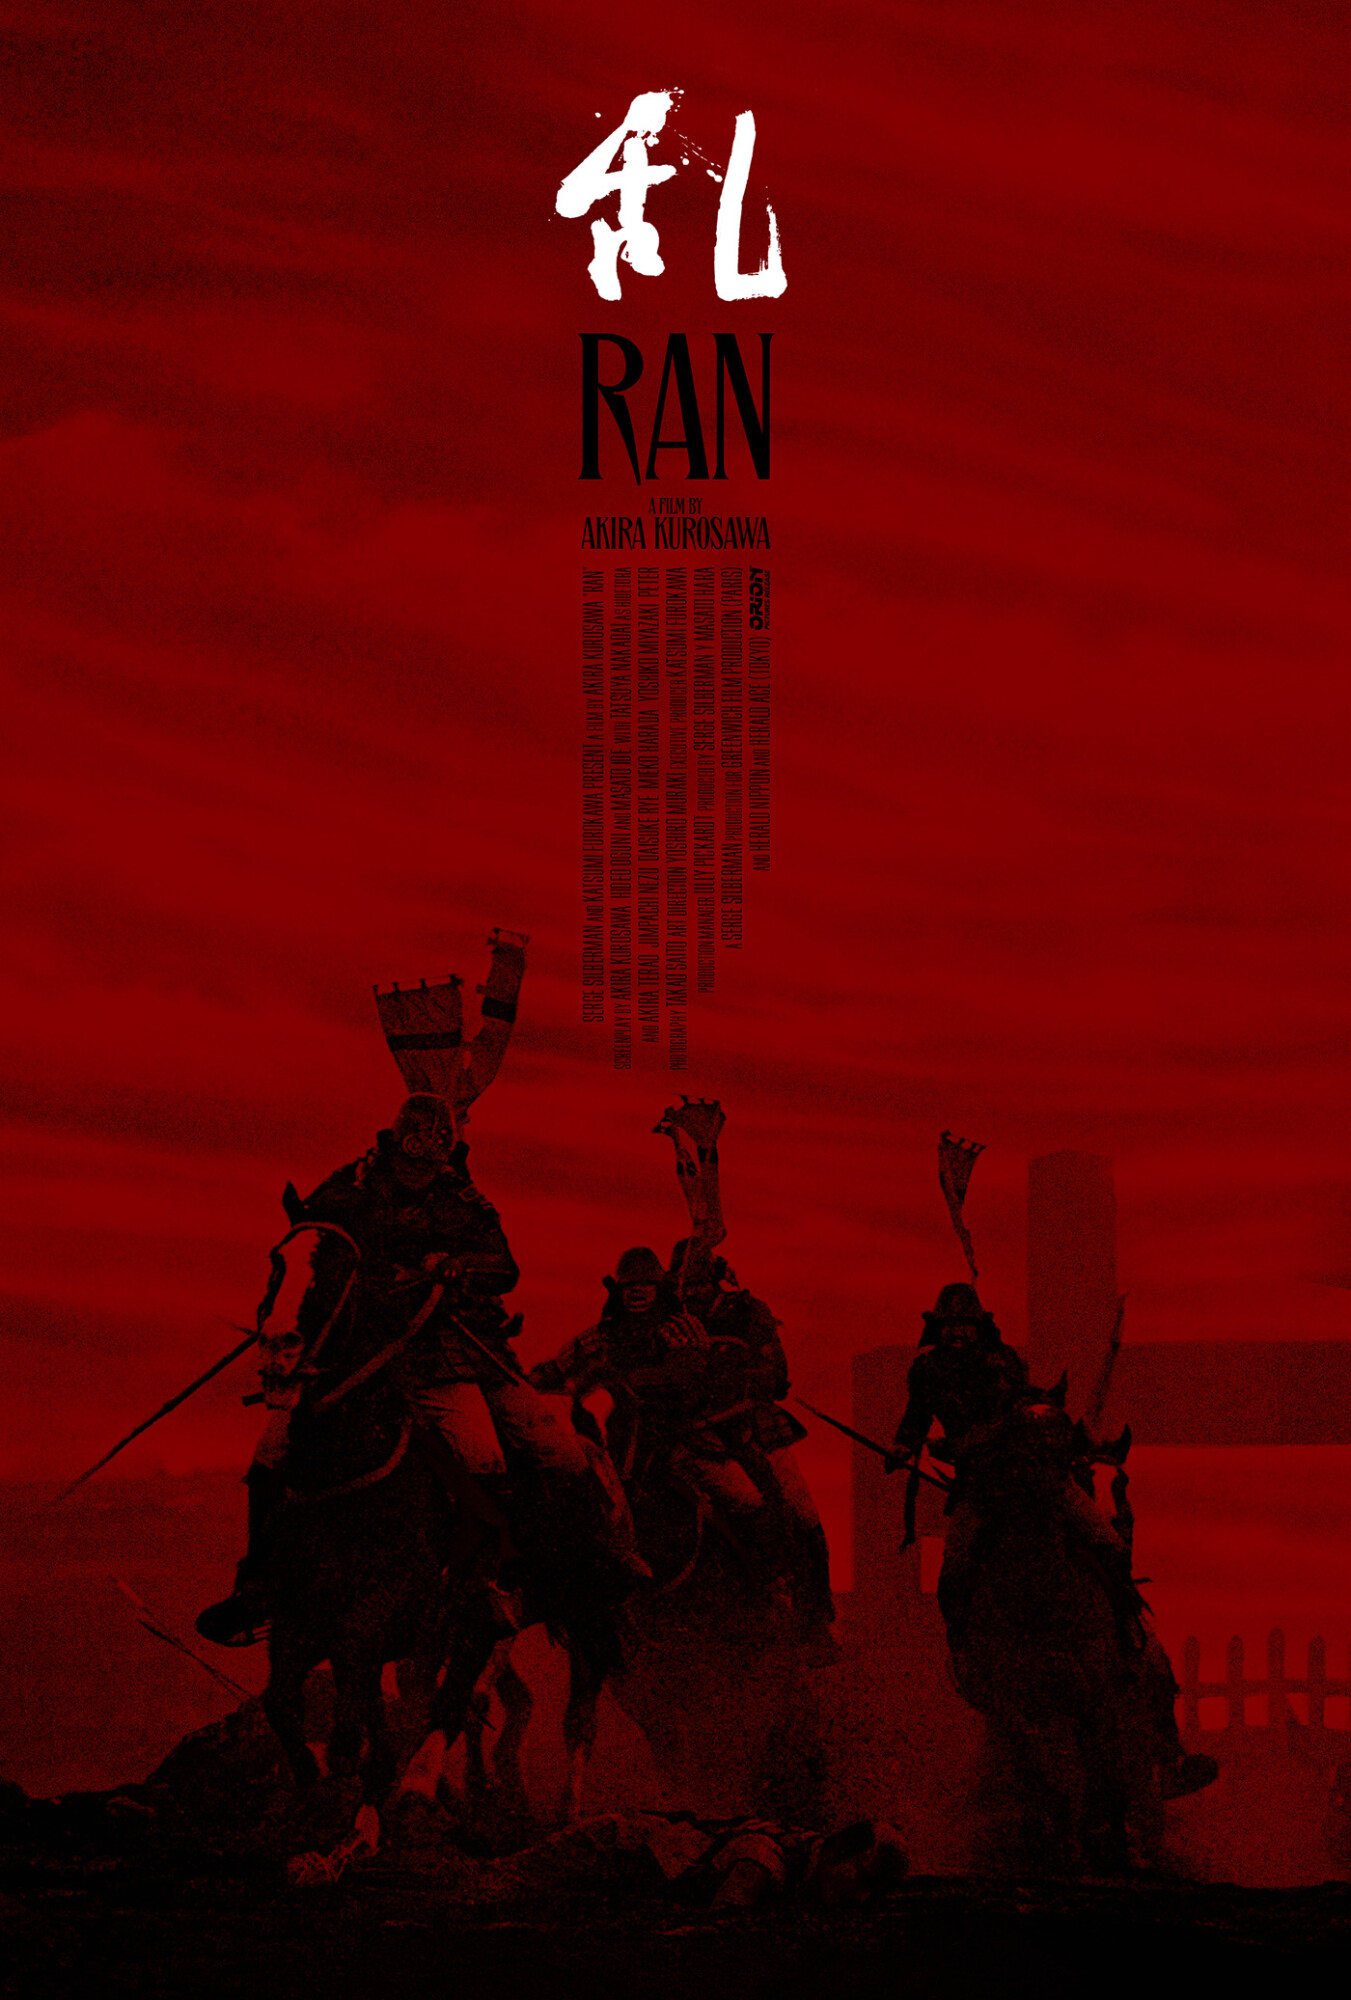 Ran (Akira Kurosawa, 1985)